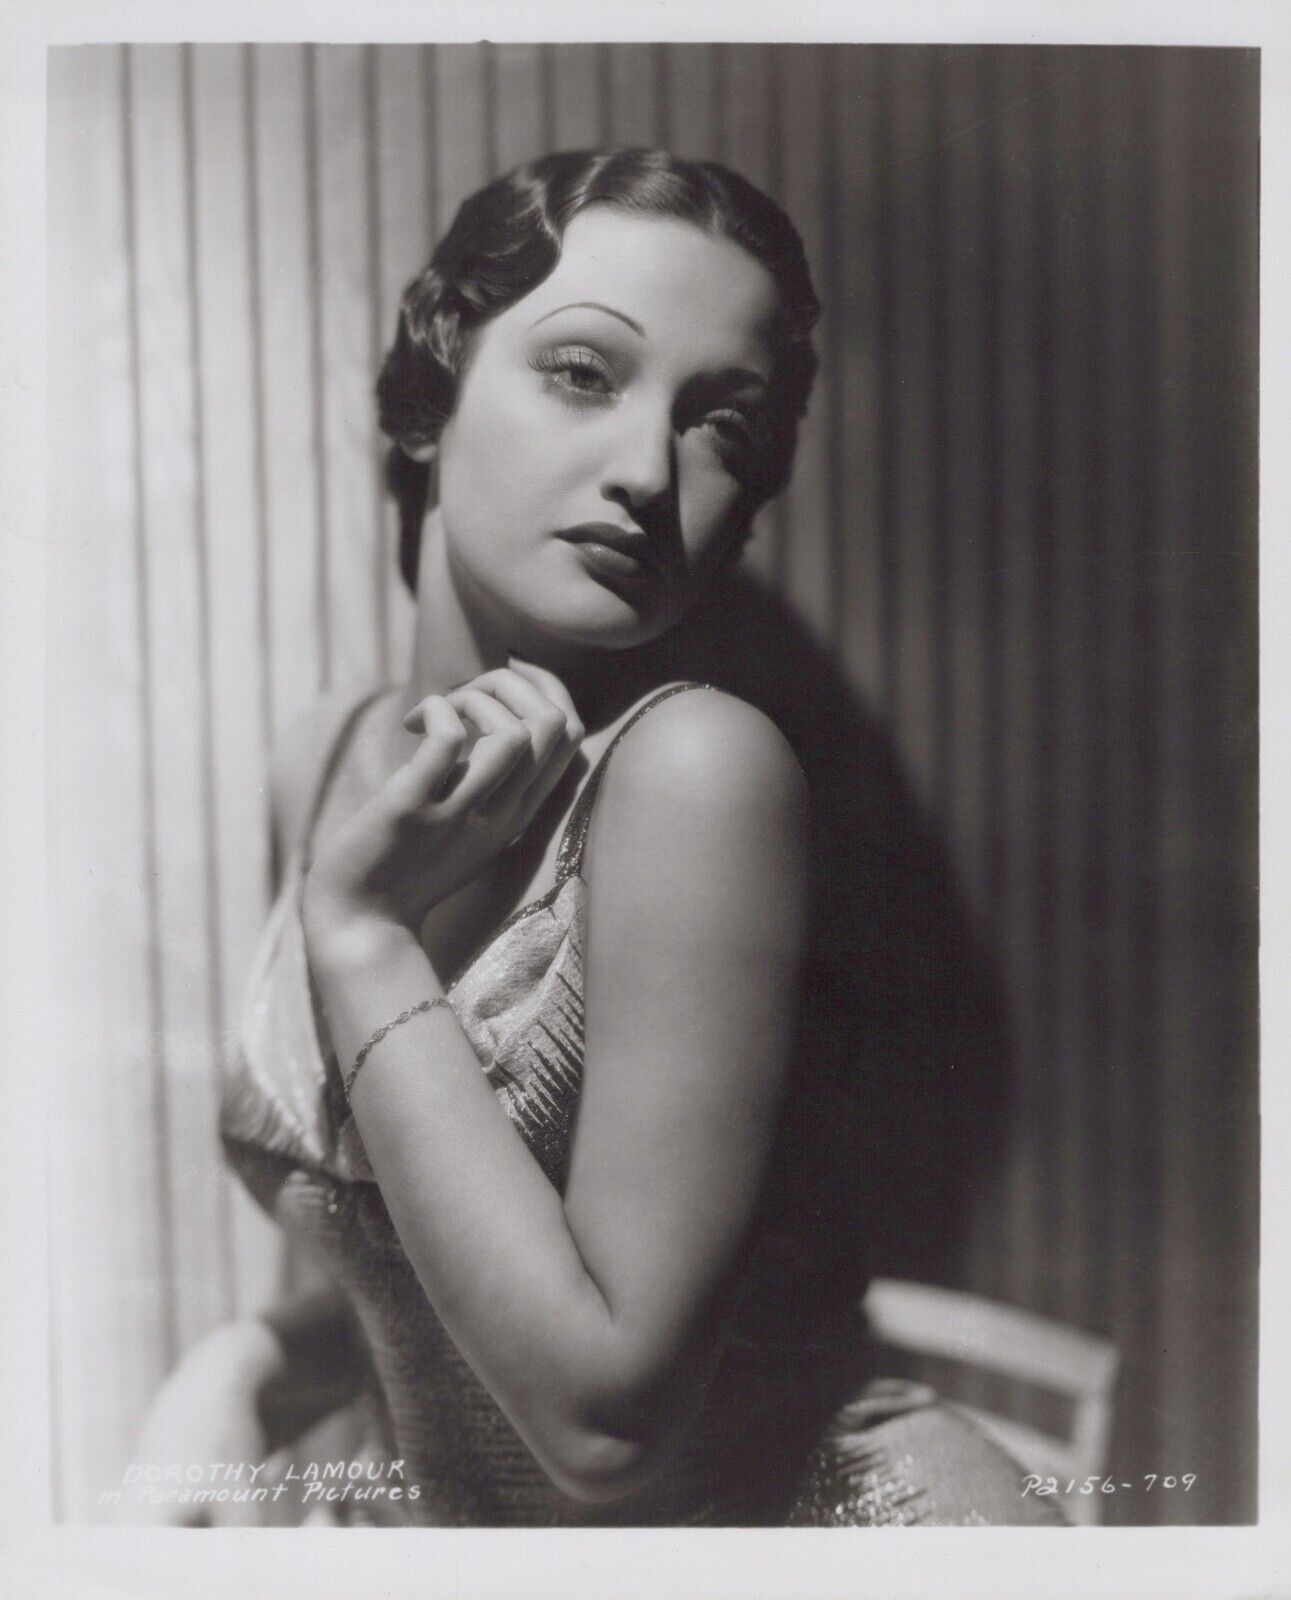 Dorothy Lamour (1940s) ❤ Stylish Glamorous Paramount Vintage Photo K 518